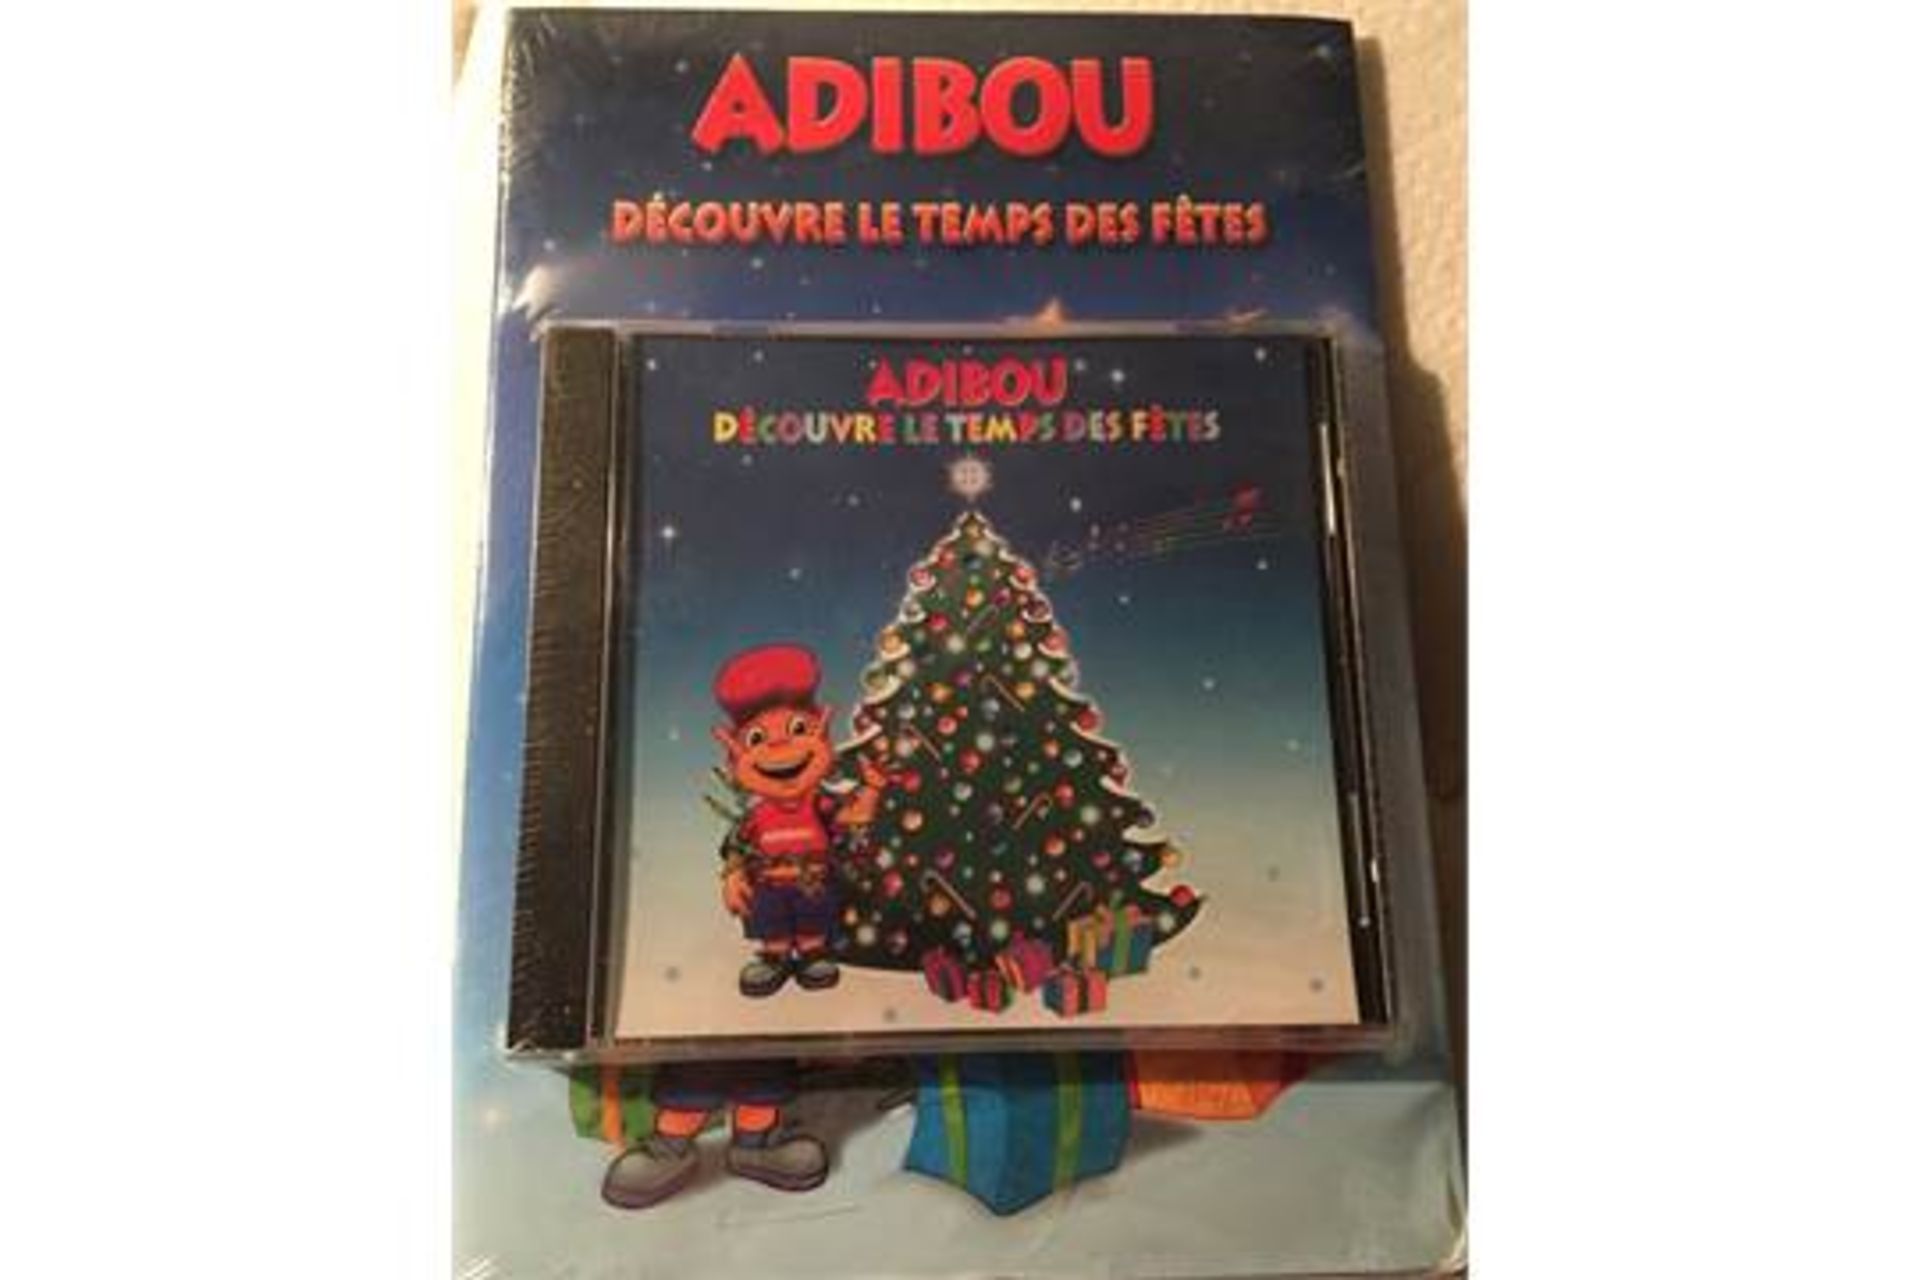 50 x Adibou découvre le temps des fêtes (Adibou Discovers the Holidays) Audio CD